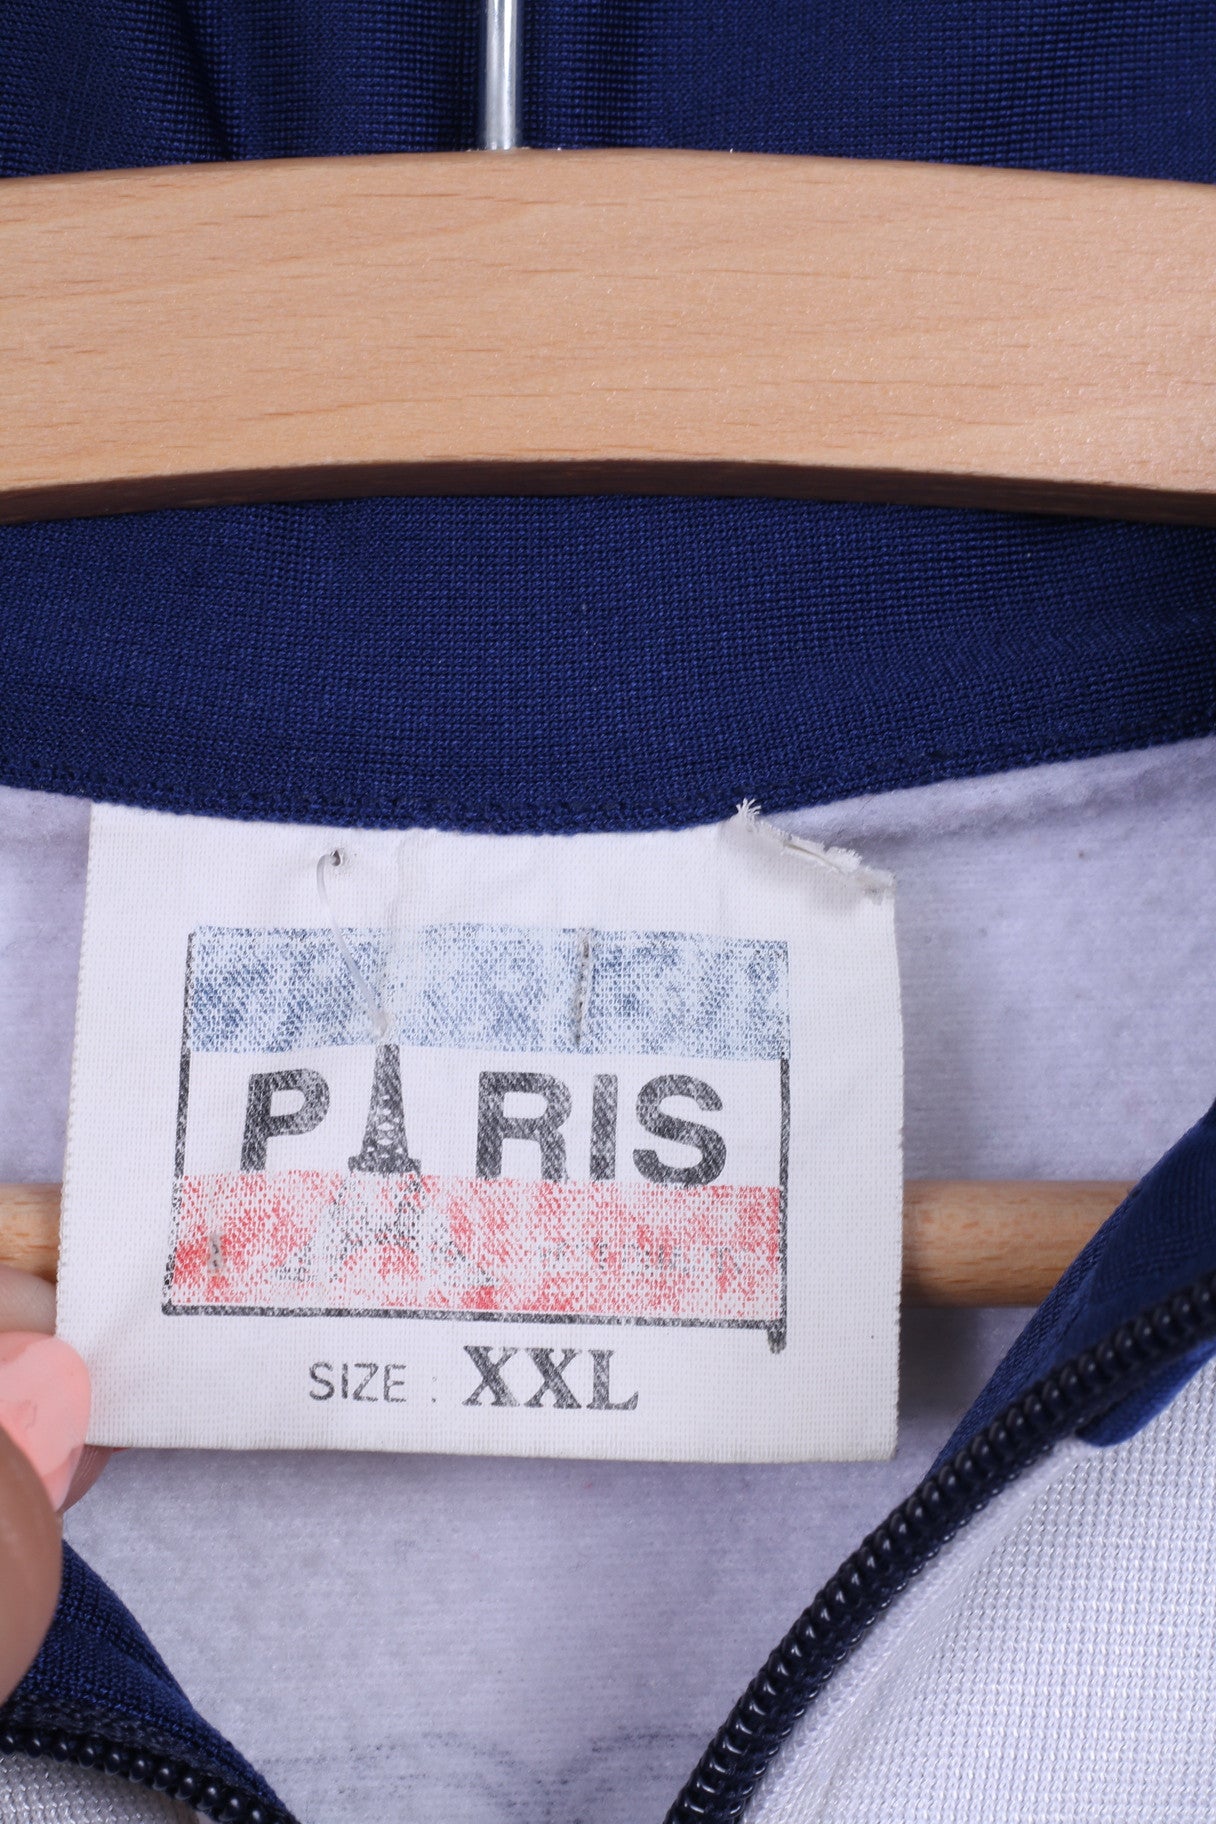 Intersprot Football France Wrold Cup '98 Mens S Track Top Jacket Navy Sweatshirt Vintage